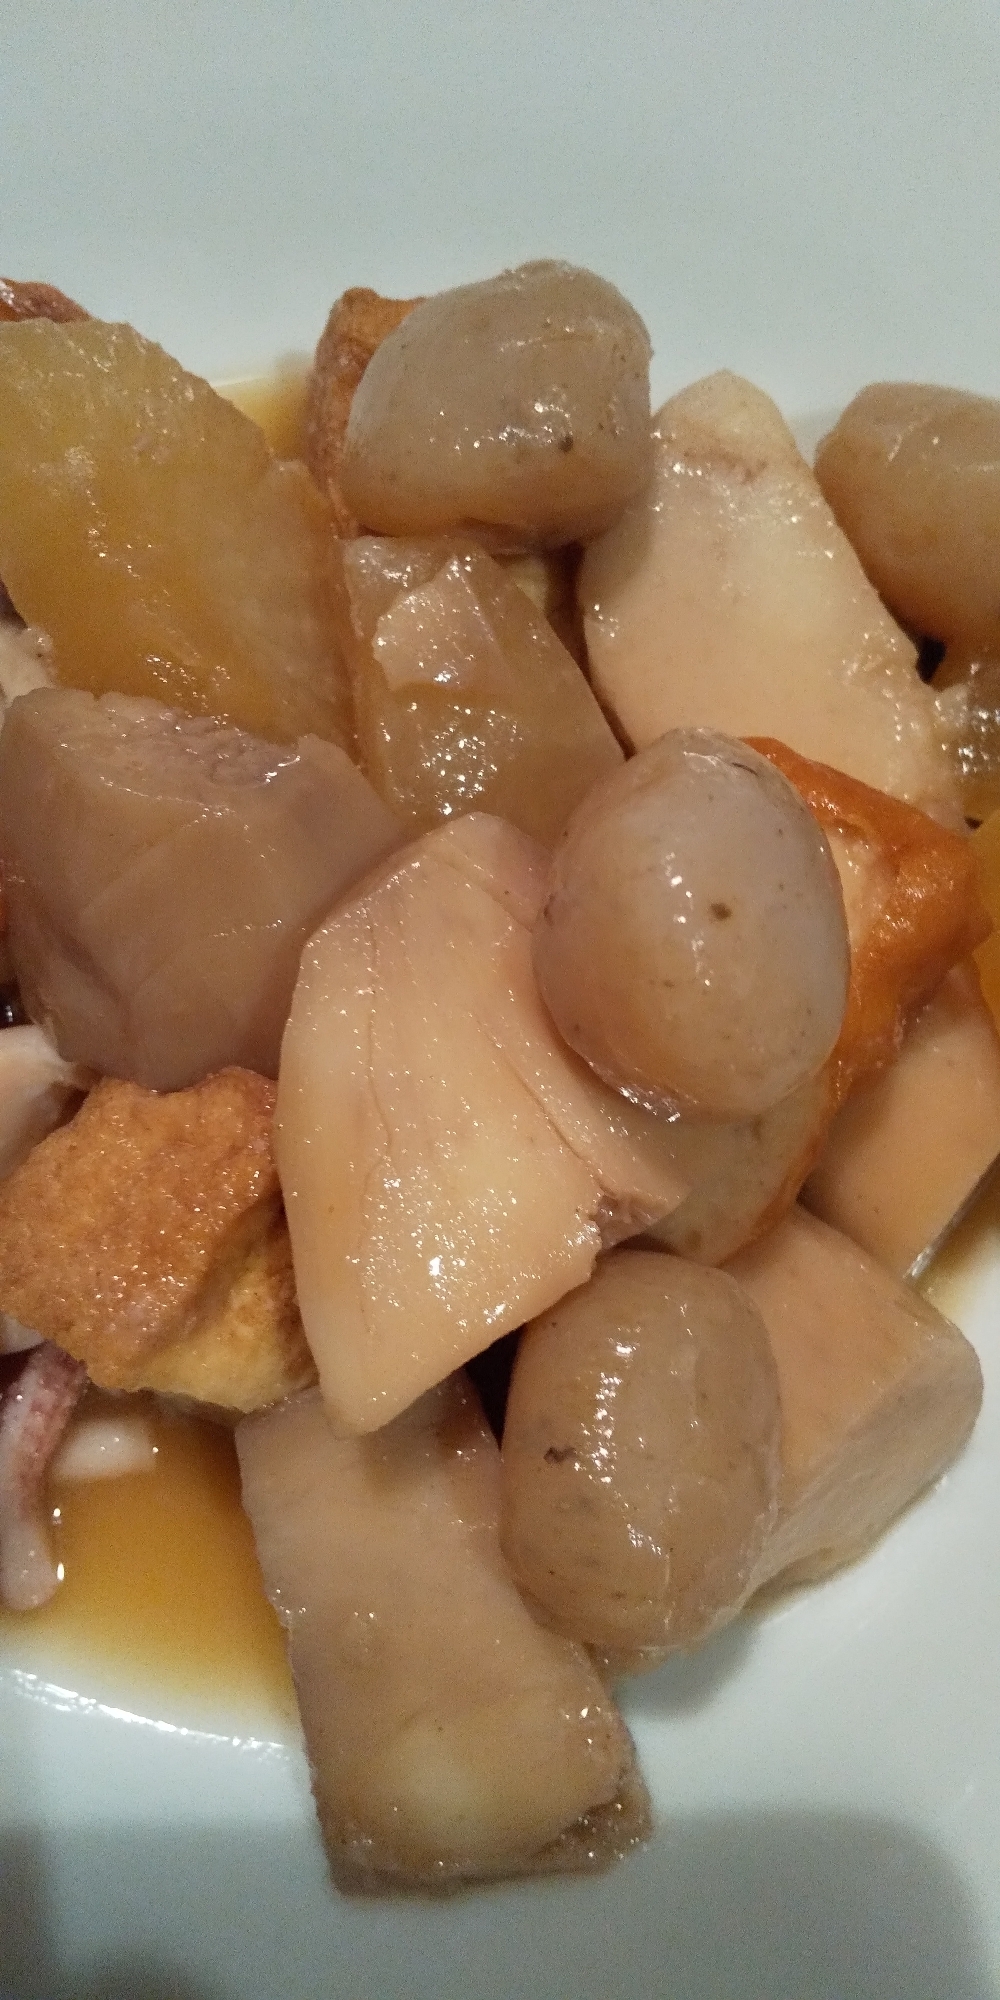 里芋と大根、こんにゃくの煮物